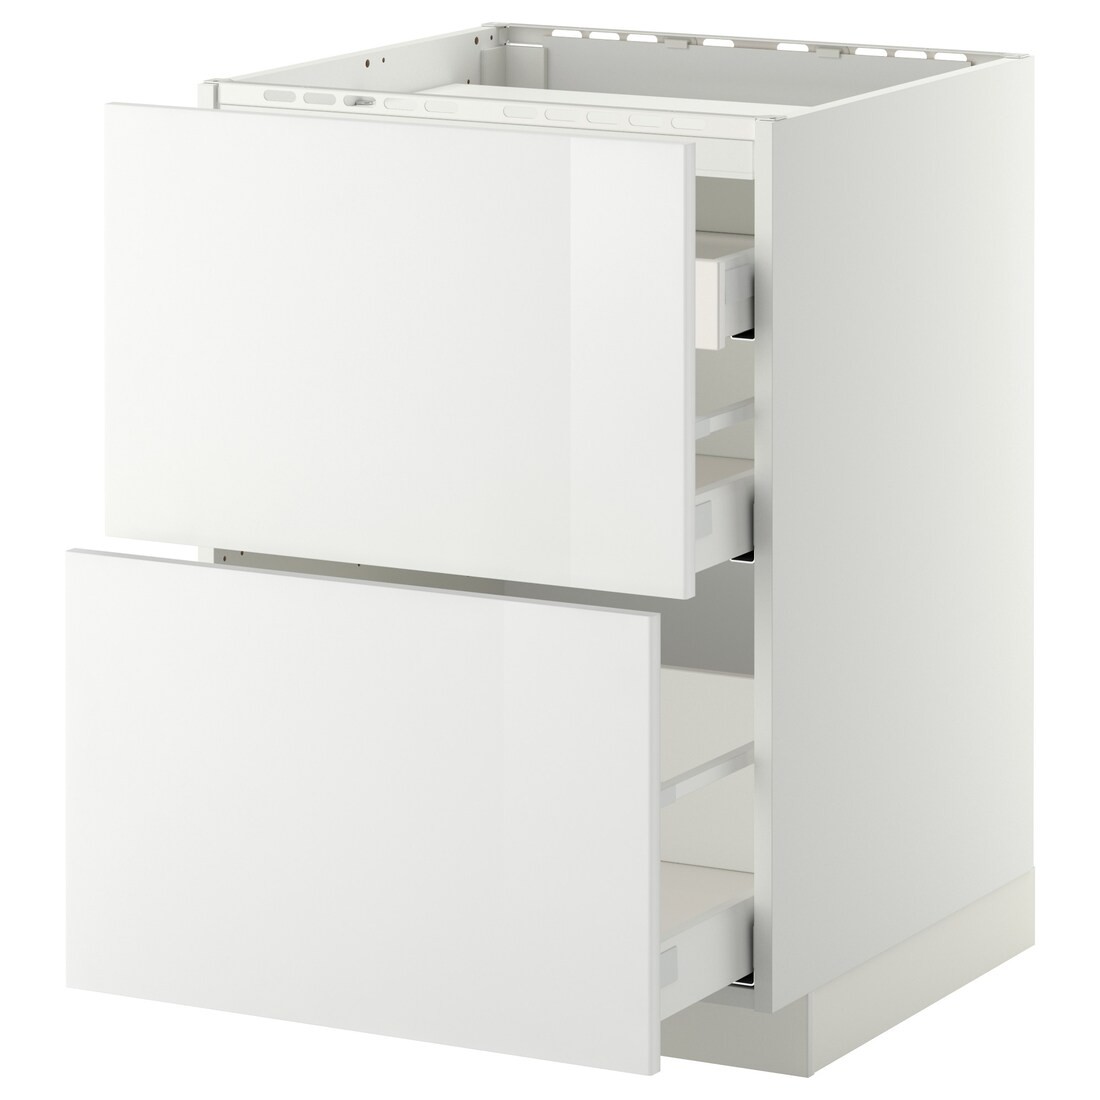 IKEA METOD МЕТОД / MAXIMERA МАКСИМЕРА Напольный шкаф с ящиками, белый / Ringhult белый, 60x60 см 69027158 690.271.58